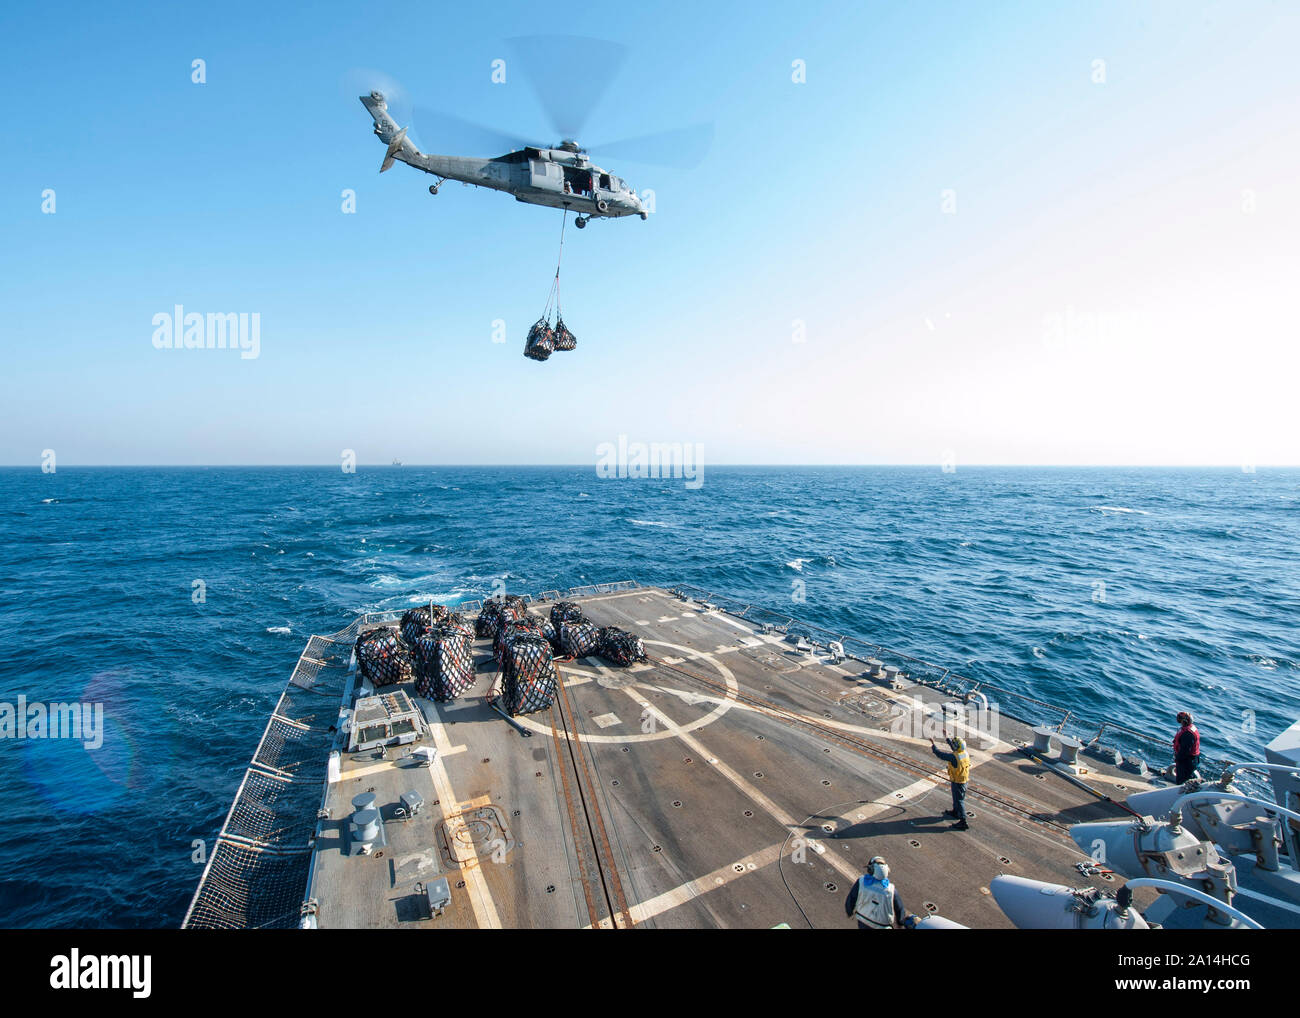 Ein MH-60S Seahawk Hubschrauber fällt die Versorgung an Bord der USS Truxton. Stockfoto